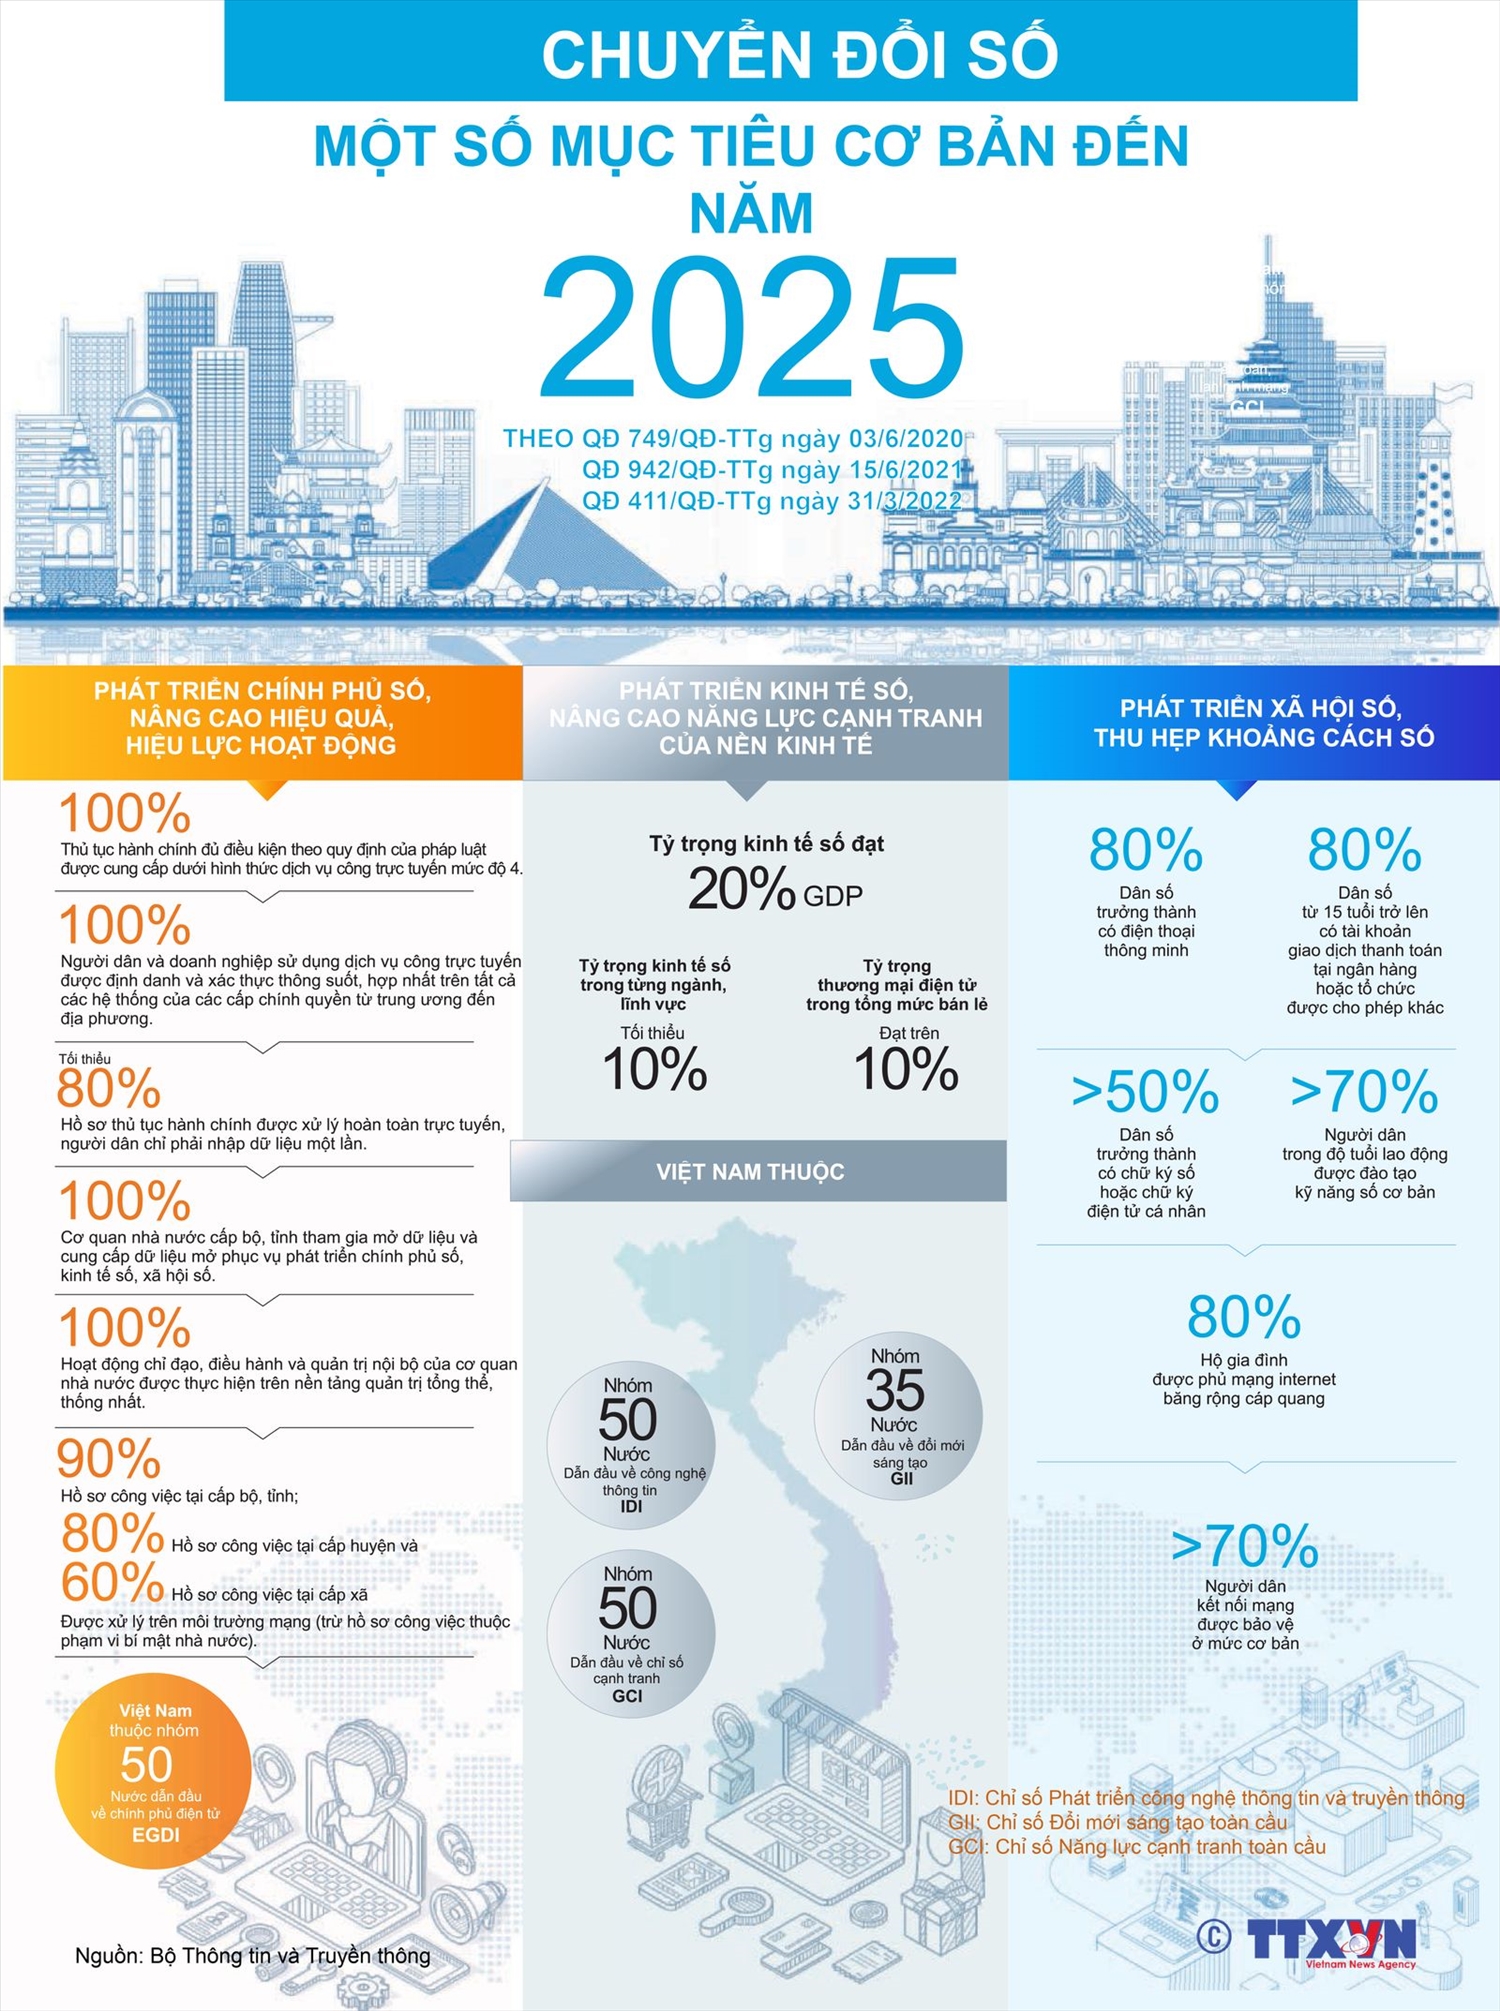 Một số mục tiêu cơ bản của chuyển đổi số quốc gia đến năm 2025